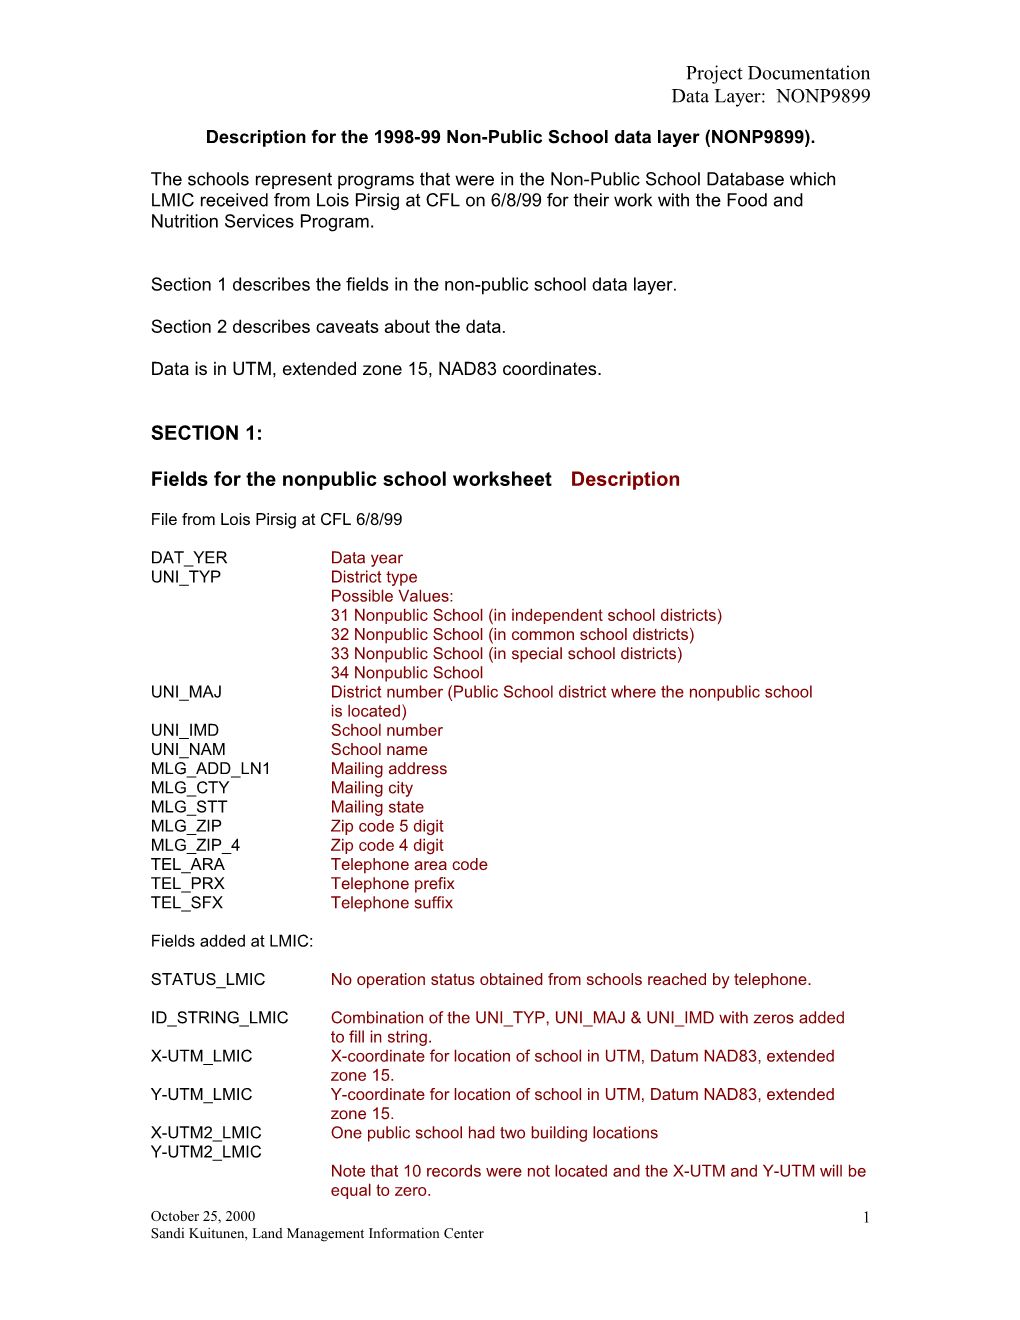 Descriptions for the 1998-99 Non-Public School Data Layer